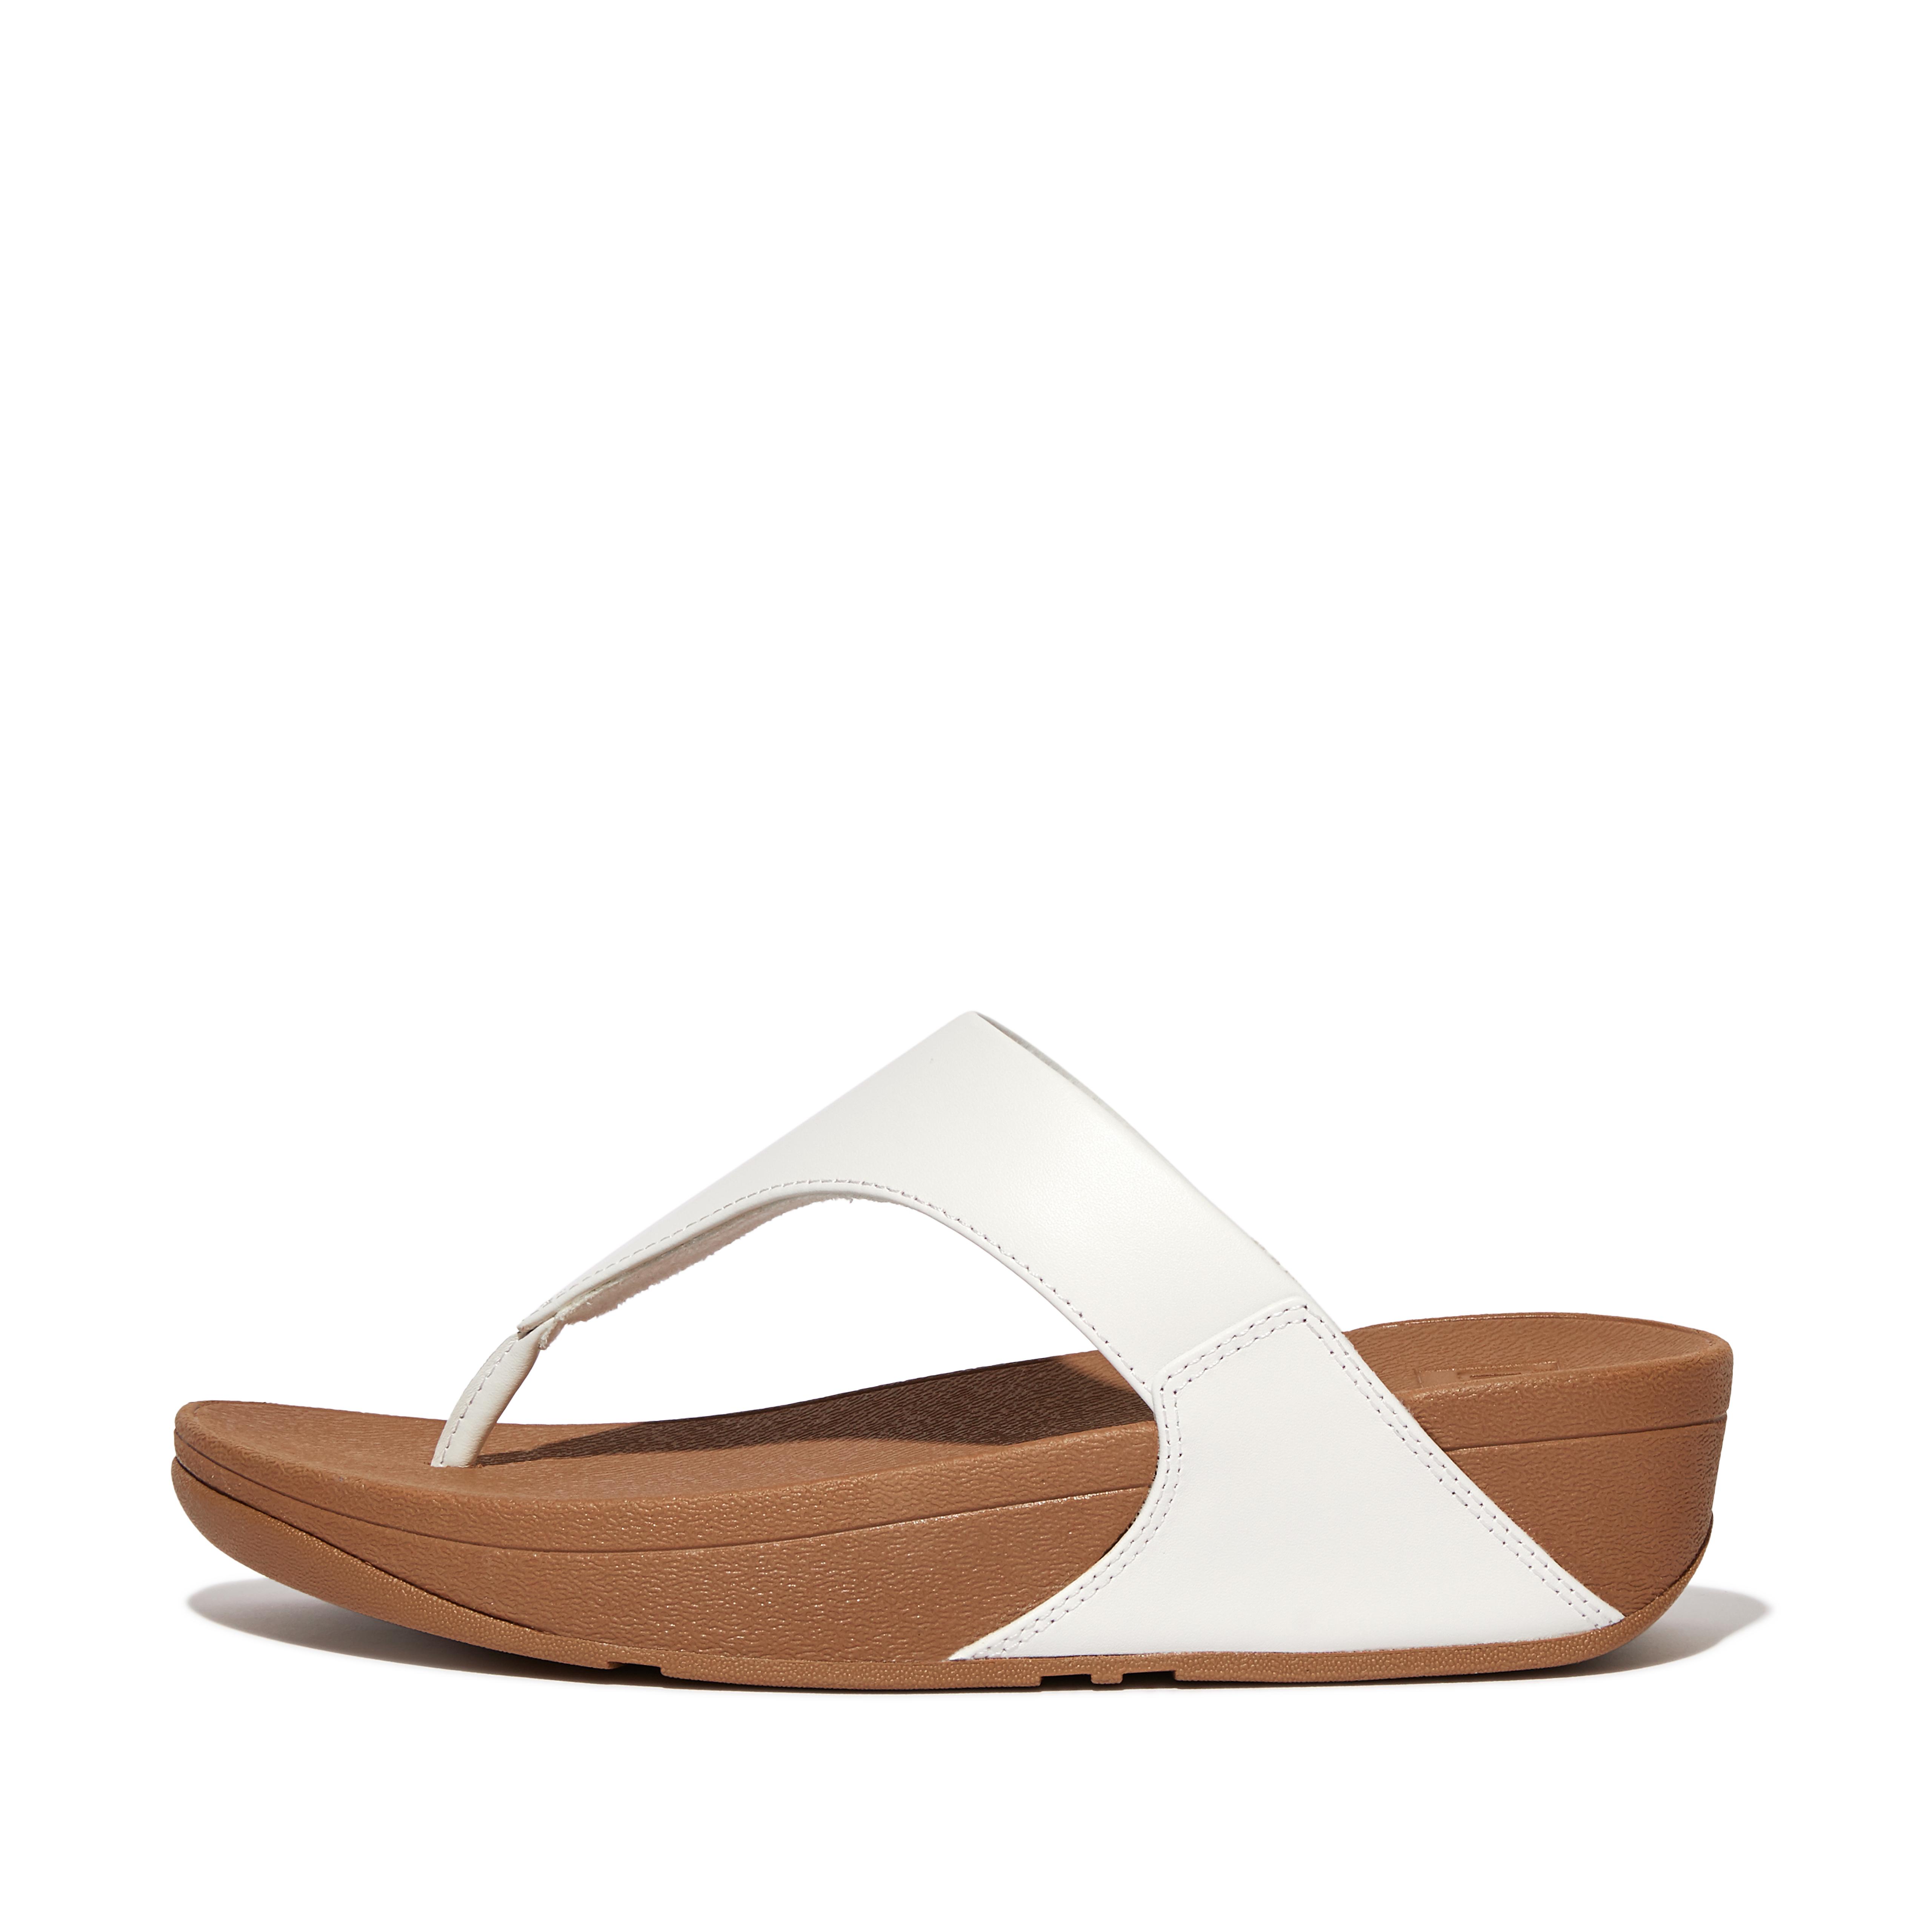 핏플랍 샌들 Fitflop Leather Toe-Post Sandals,White